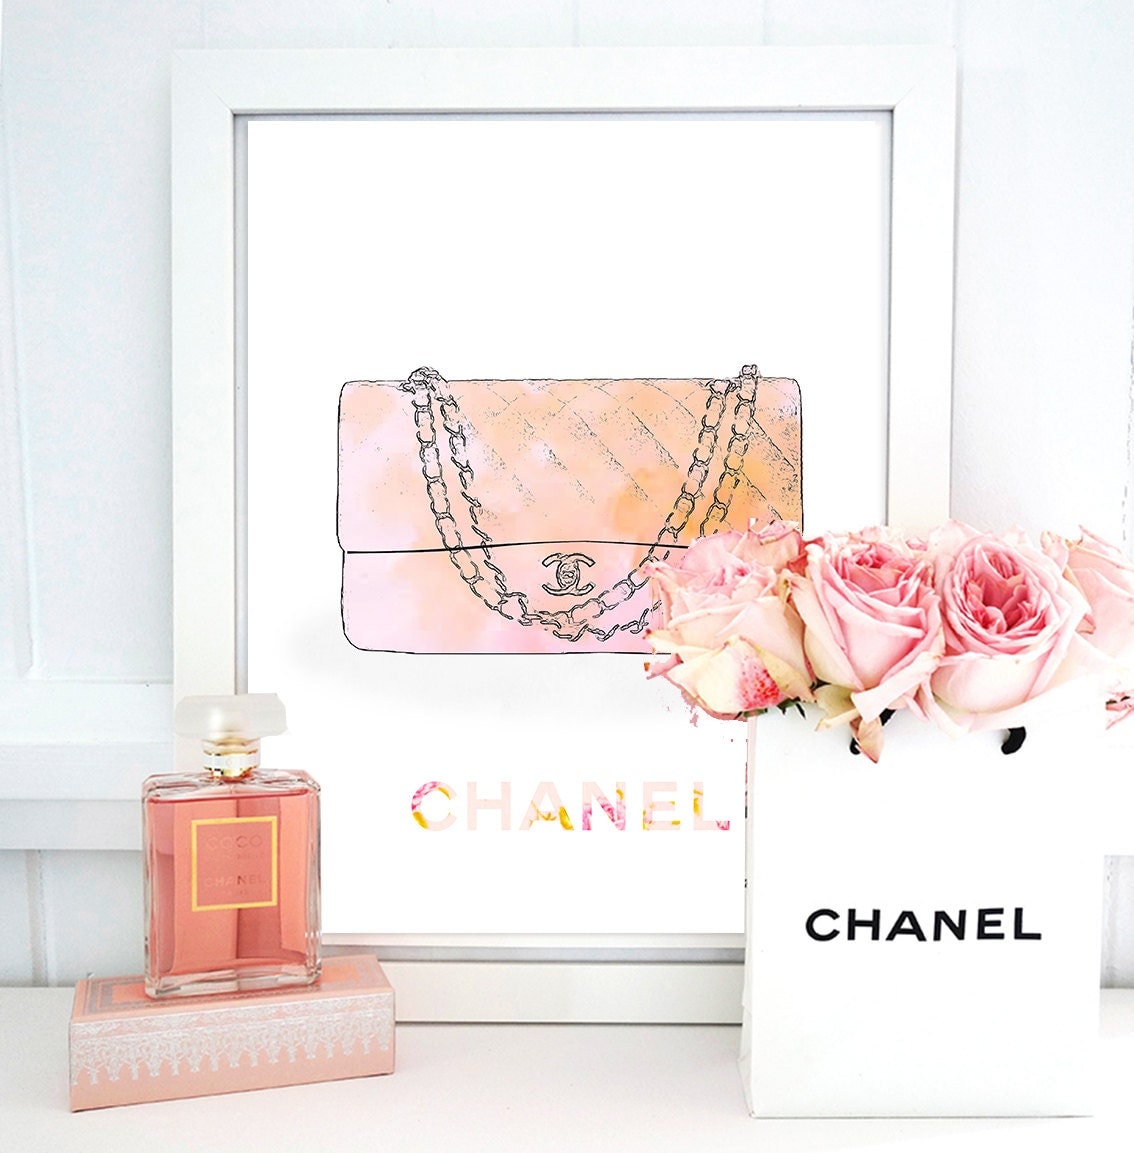 Chanel Bag Print. Chanel Print. Paris Print. by CouturePrintery